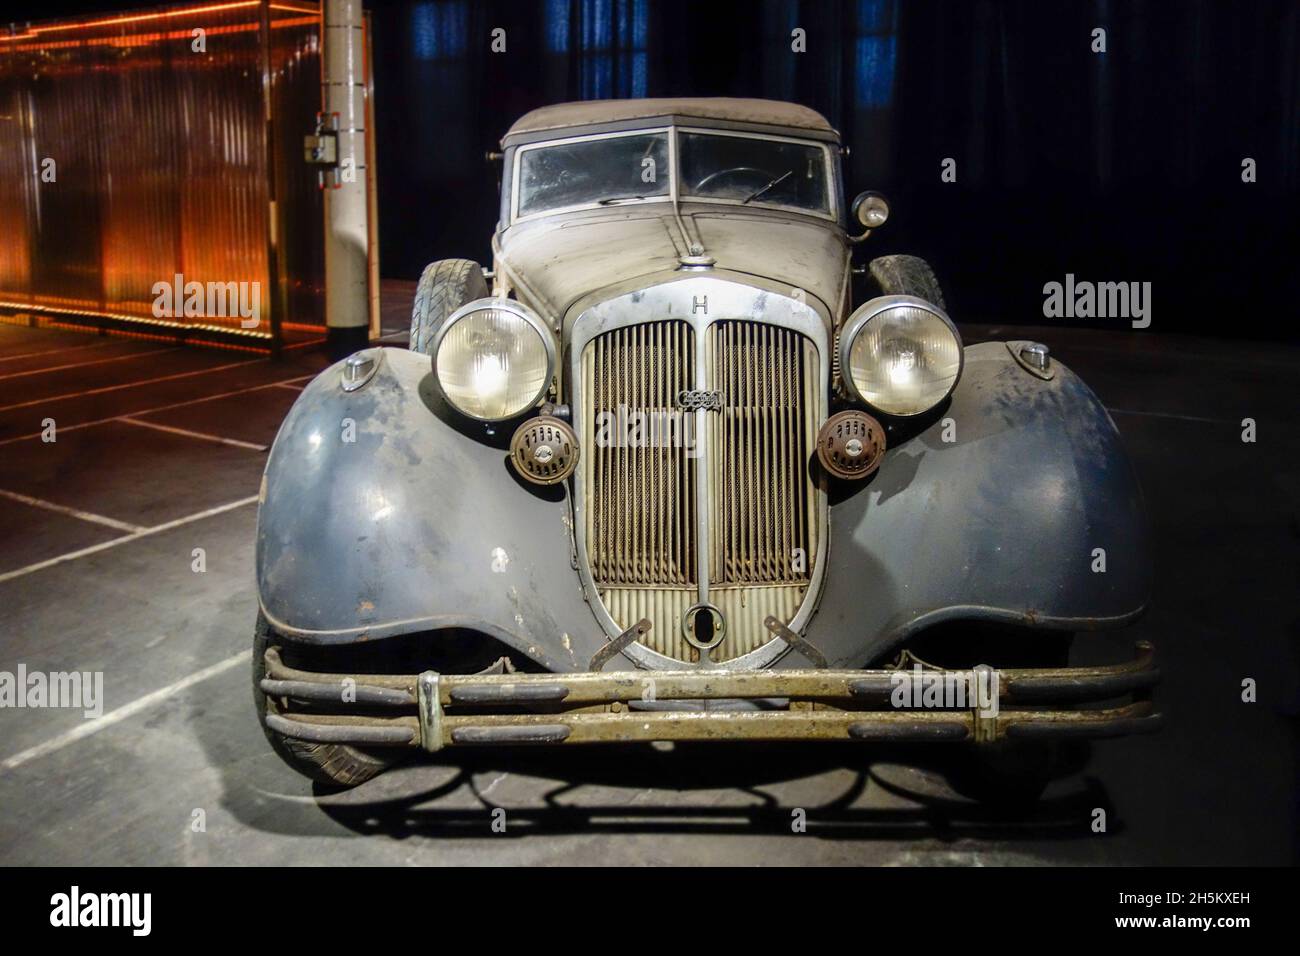 Rusty et Dusty 1937 Horch Typ 853, voiture classique allemande / oldtimer, en mauvais état prêt à être restauré dans le garage Banque D'Images